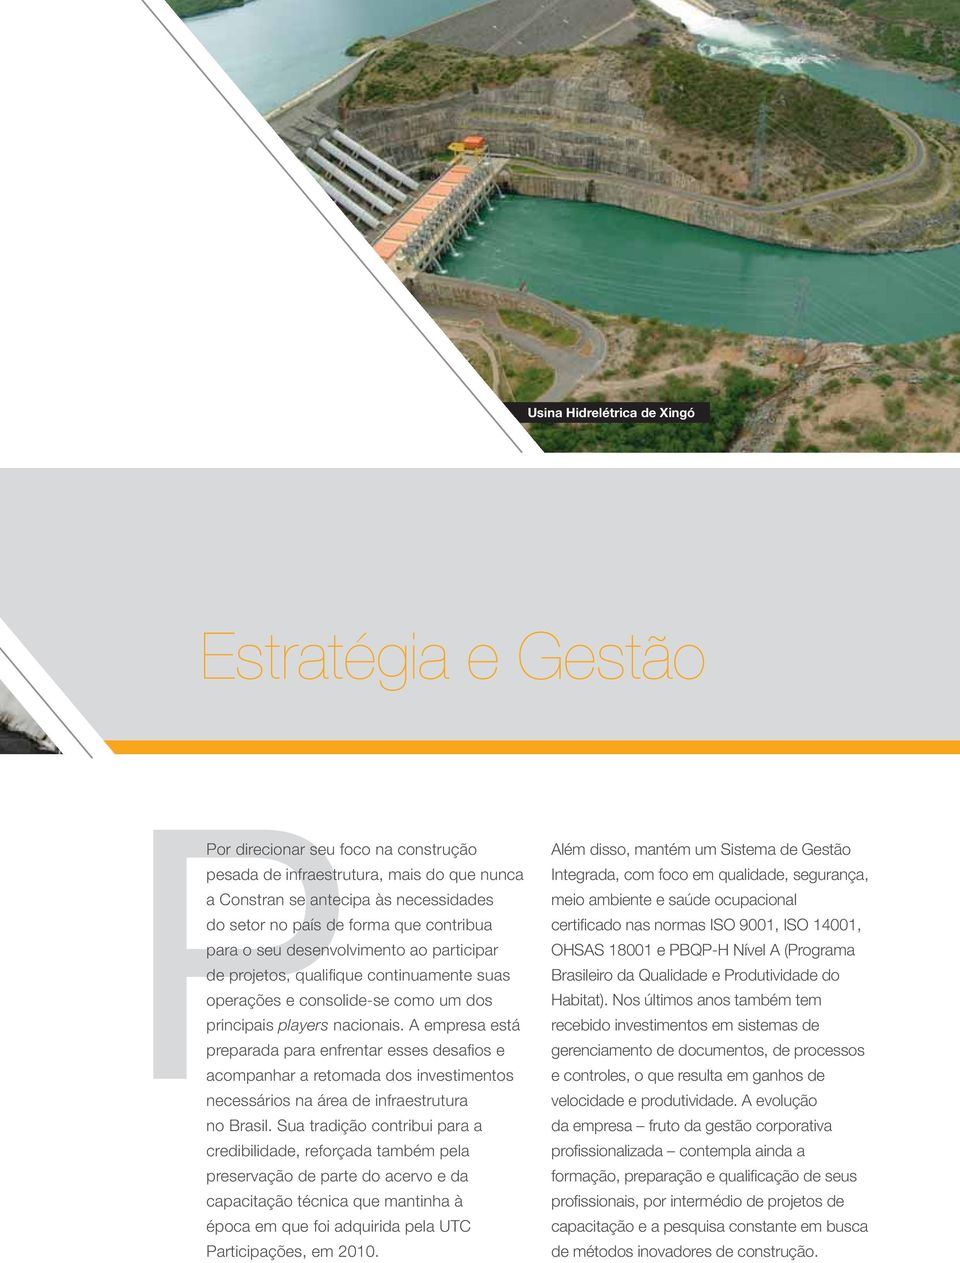 A empresa está preparada para enfrentar esses desafios e acompanhar a retomada dos investimentos necessários na área de infraestrutura no Brasil.